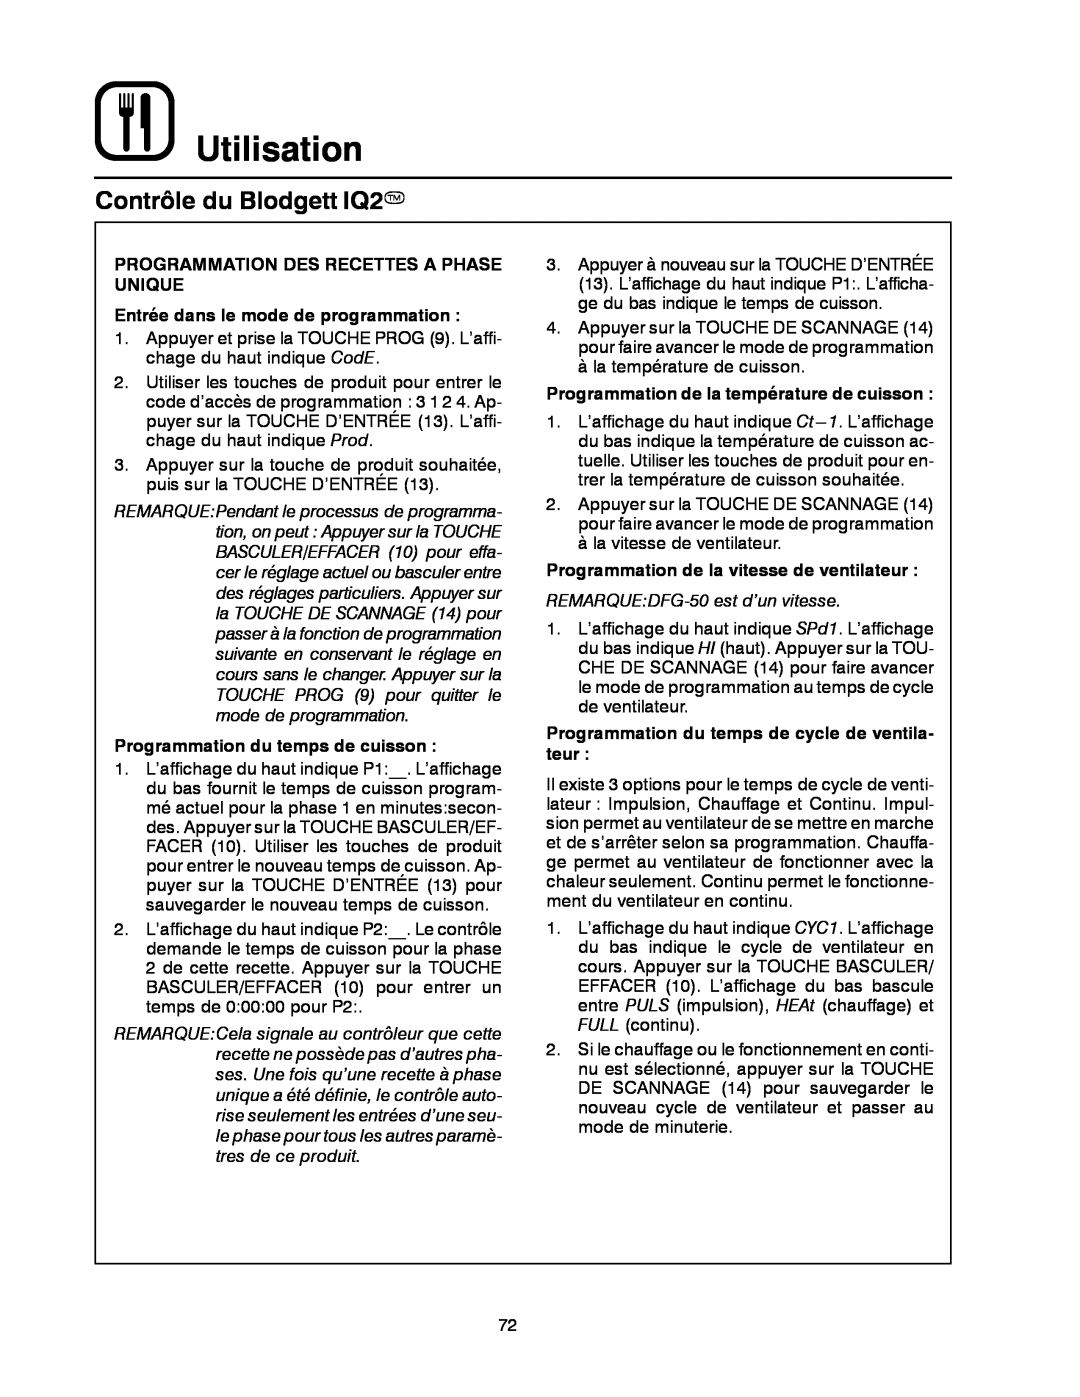 Blodgett DFG-50 manual Utilisation, Contrôle du Blodgett IQ2T, Programmation Des Recettes A Phase Unique 